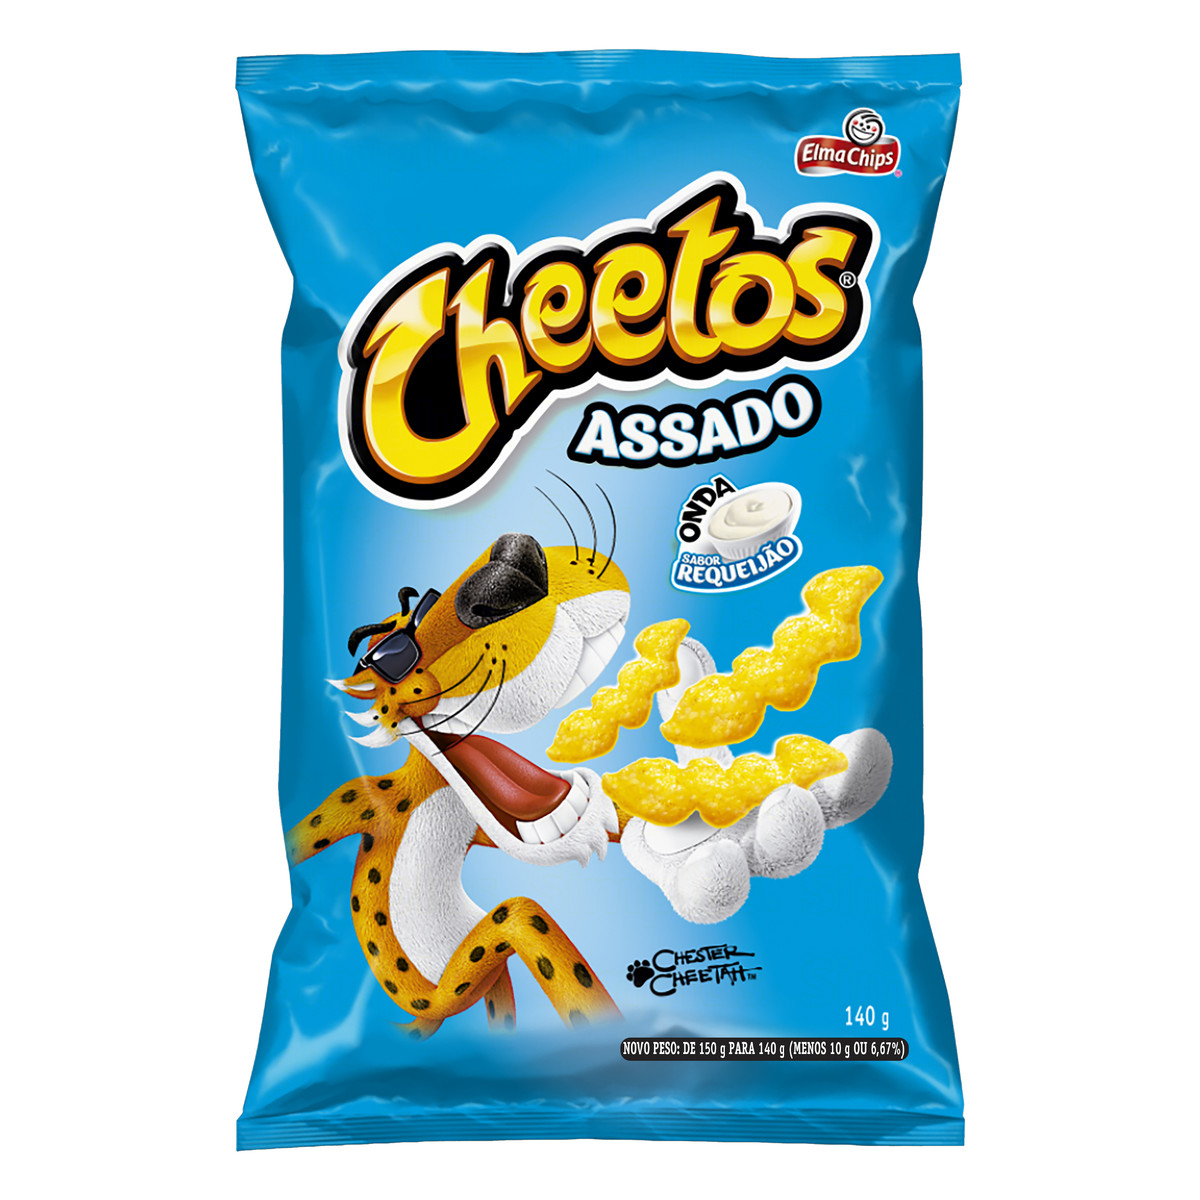 Preços baixos em Fichas de Cheetos sem Glúten